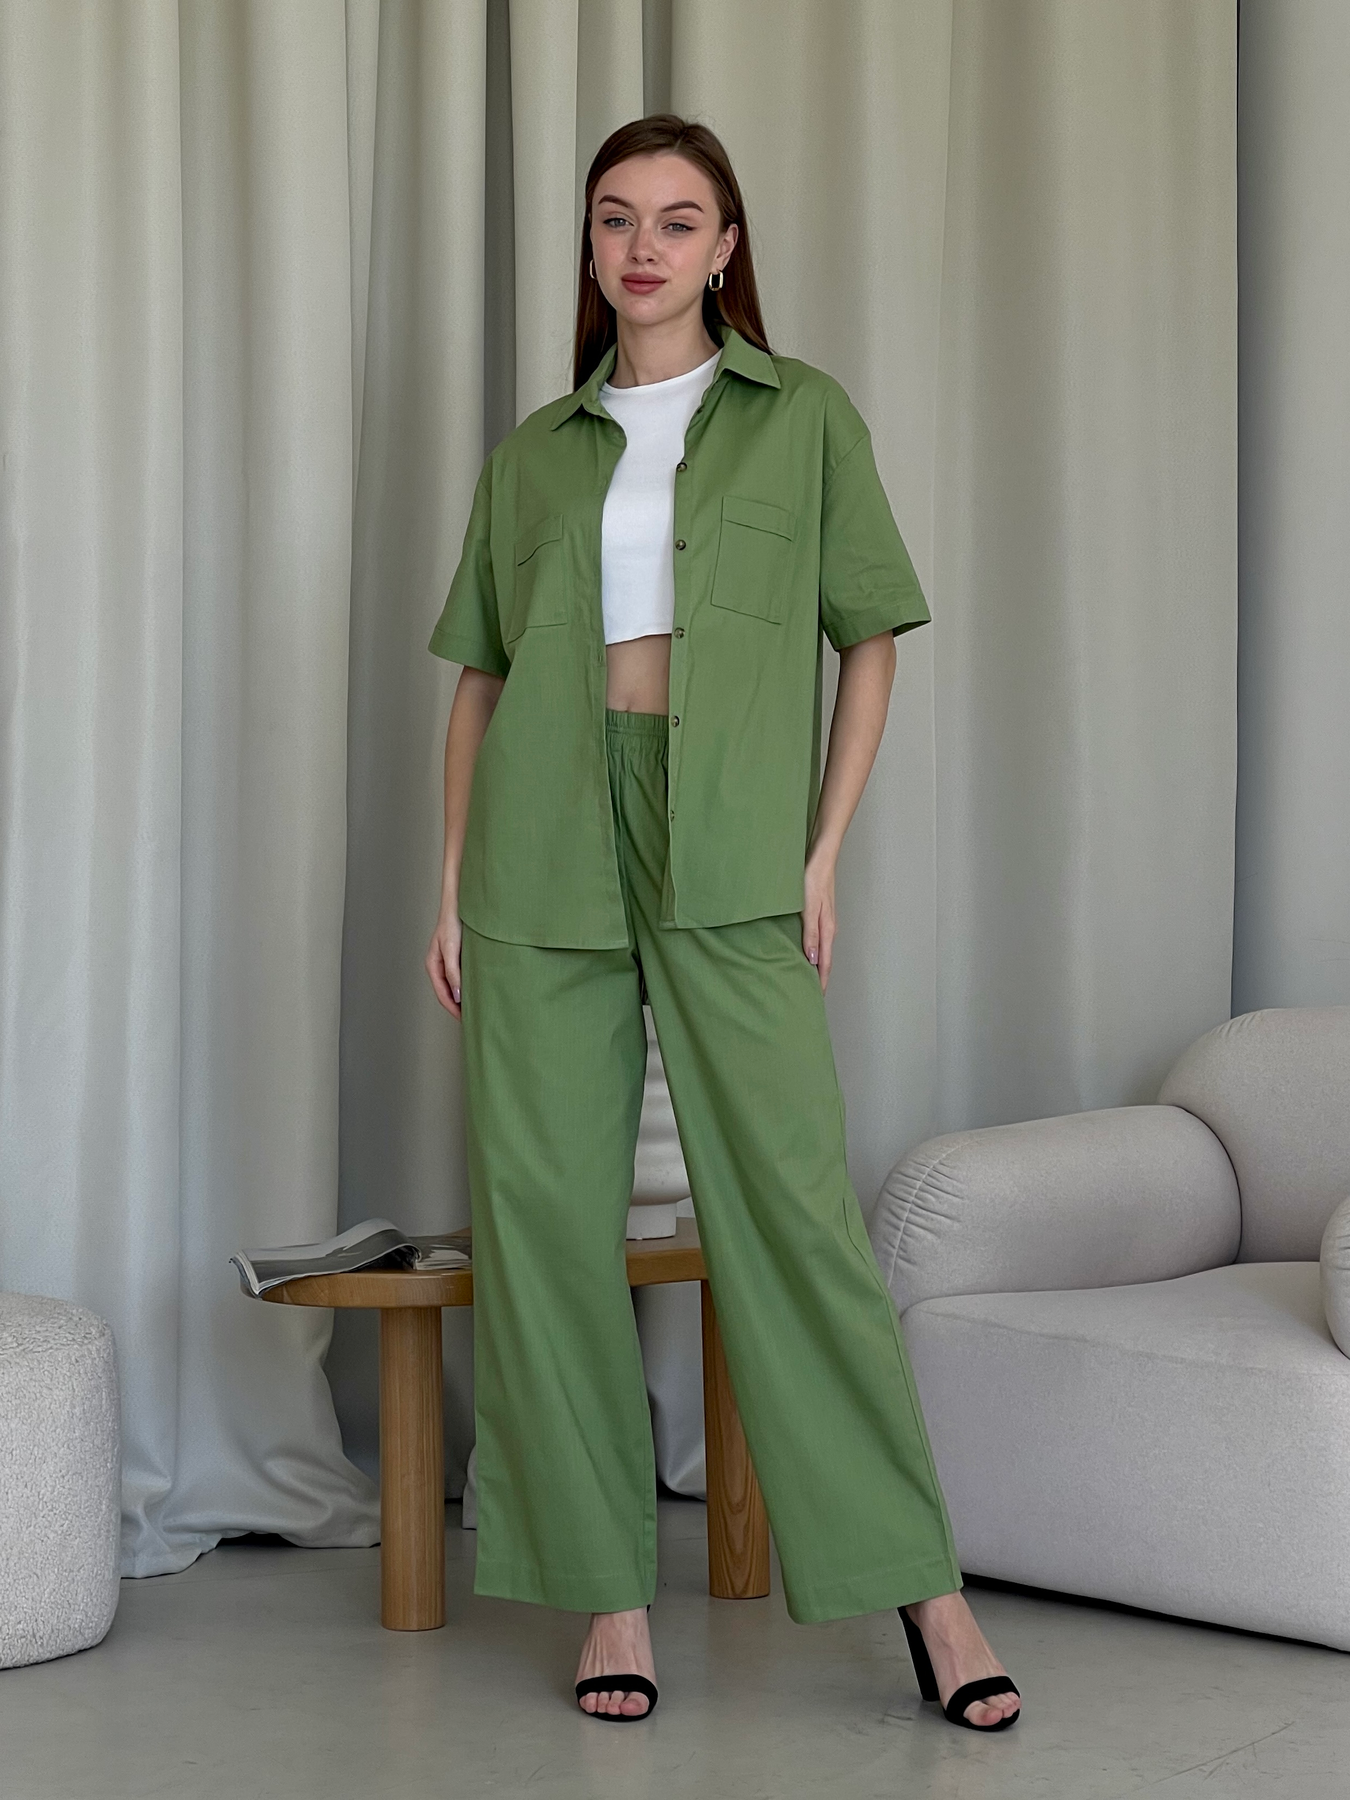 Купить Льняной костюм с штанами палаццо и рубашкой зеленый Лорен 100001205 размер 50-52 (2XL-3XL) в интернет-магазине